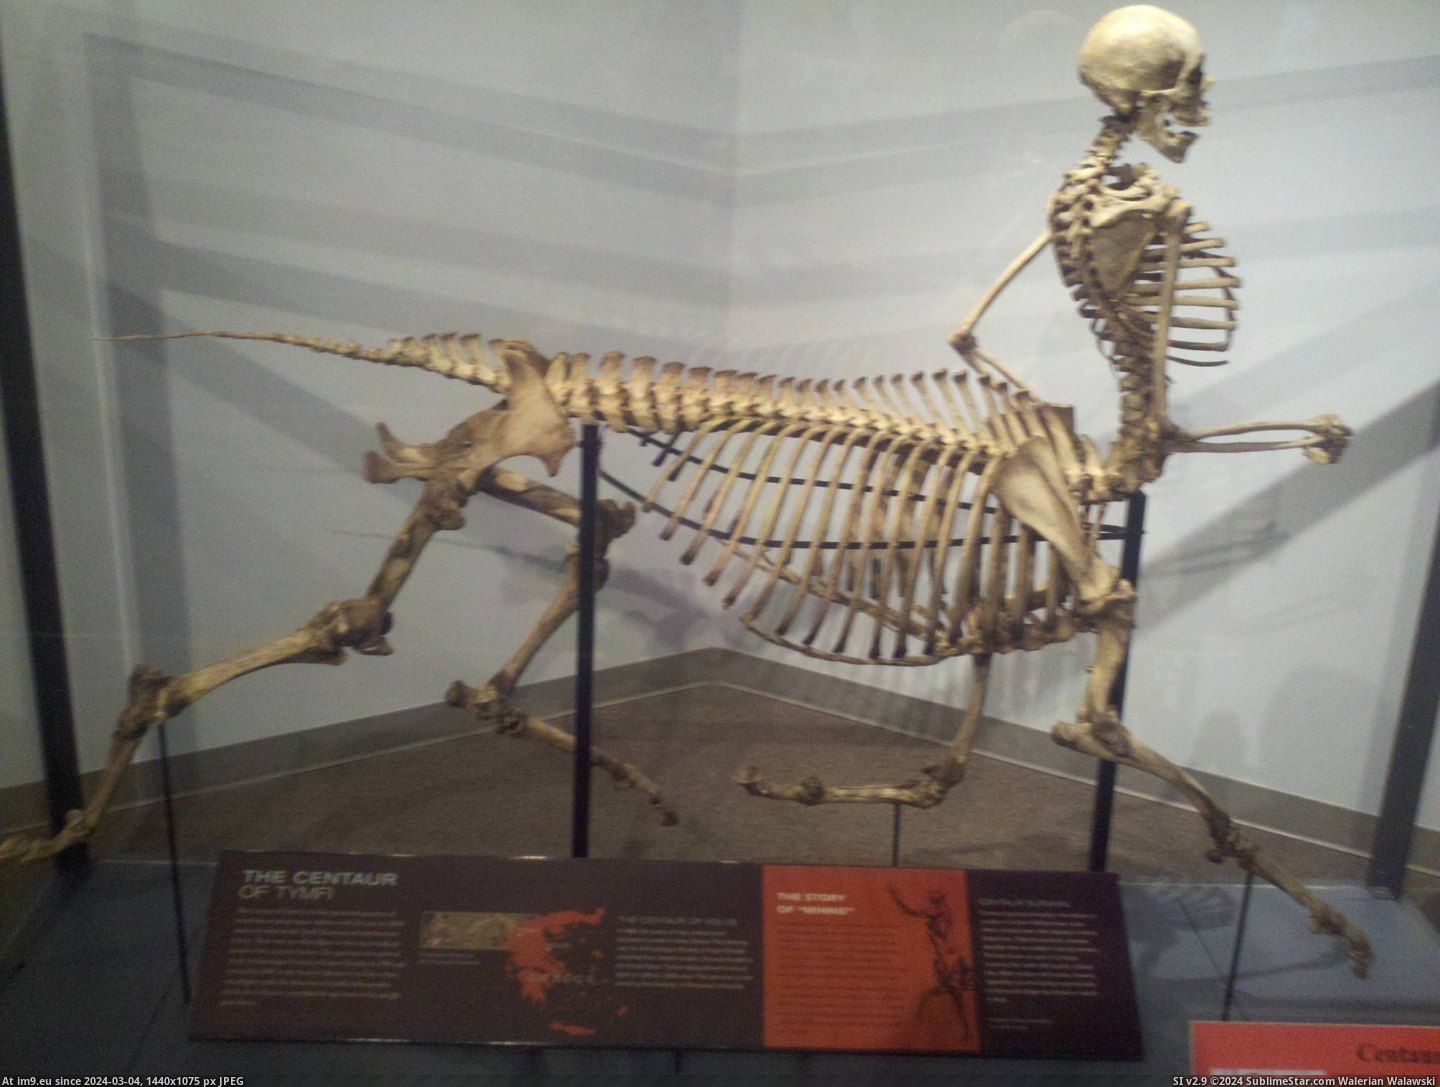 #Life #Museum #Skeleton #Centaur #Wild #Local [Pics] Centaur skeleton at my local wild life museum. Pic. (Изображение из альбом My r/PICS favs))